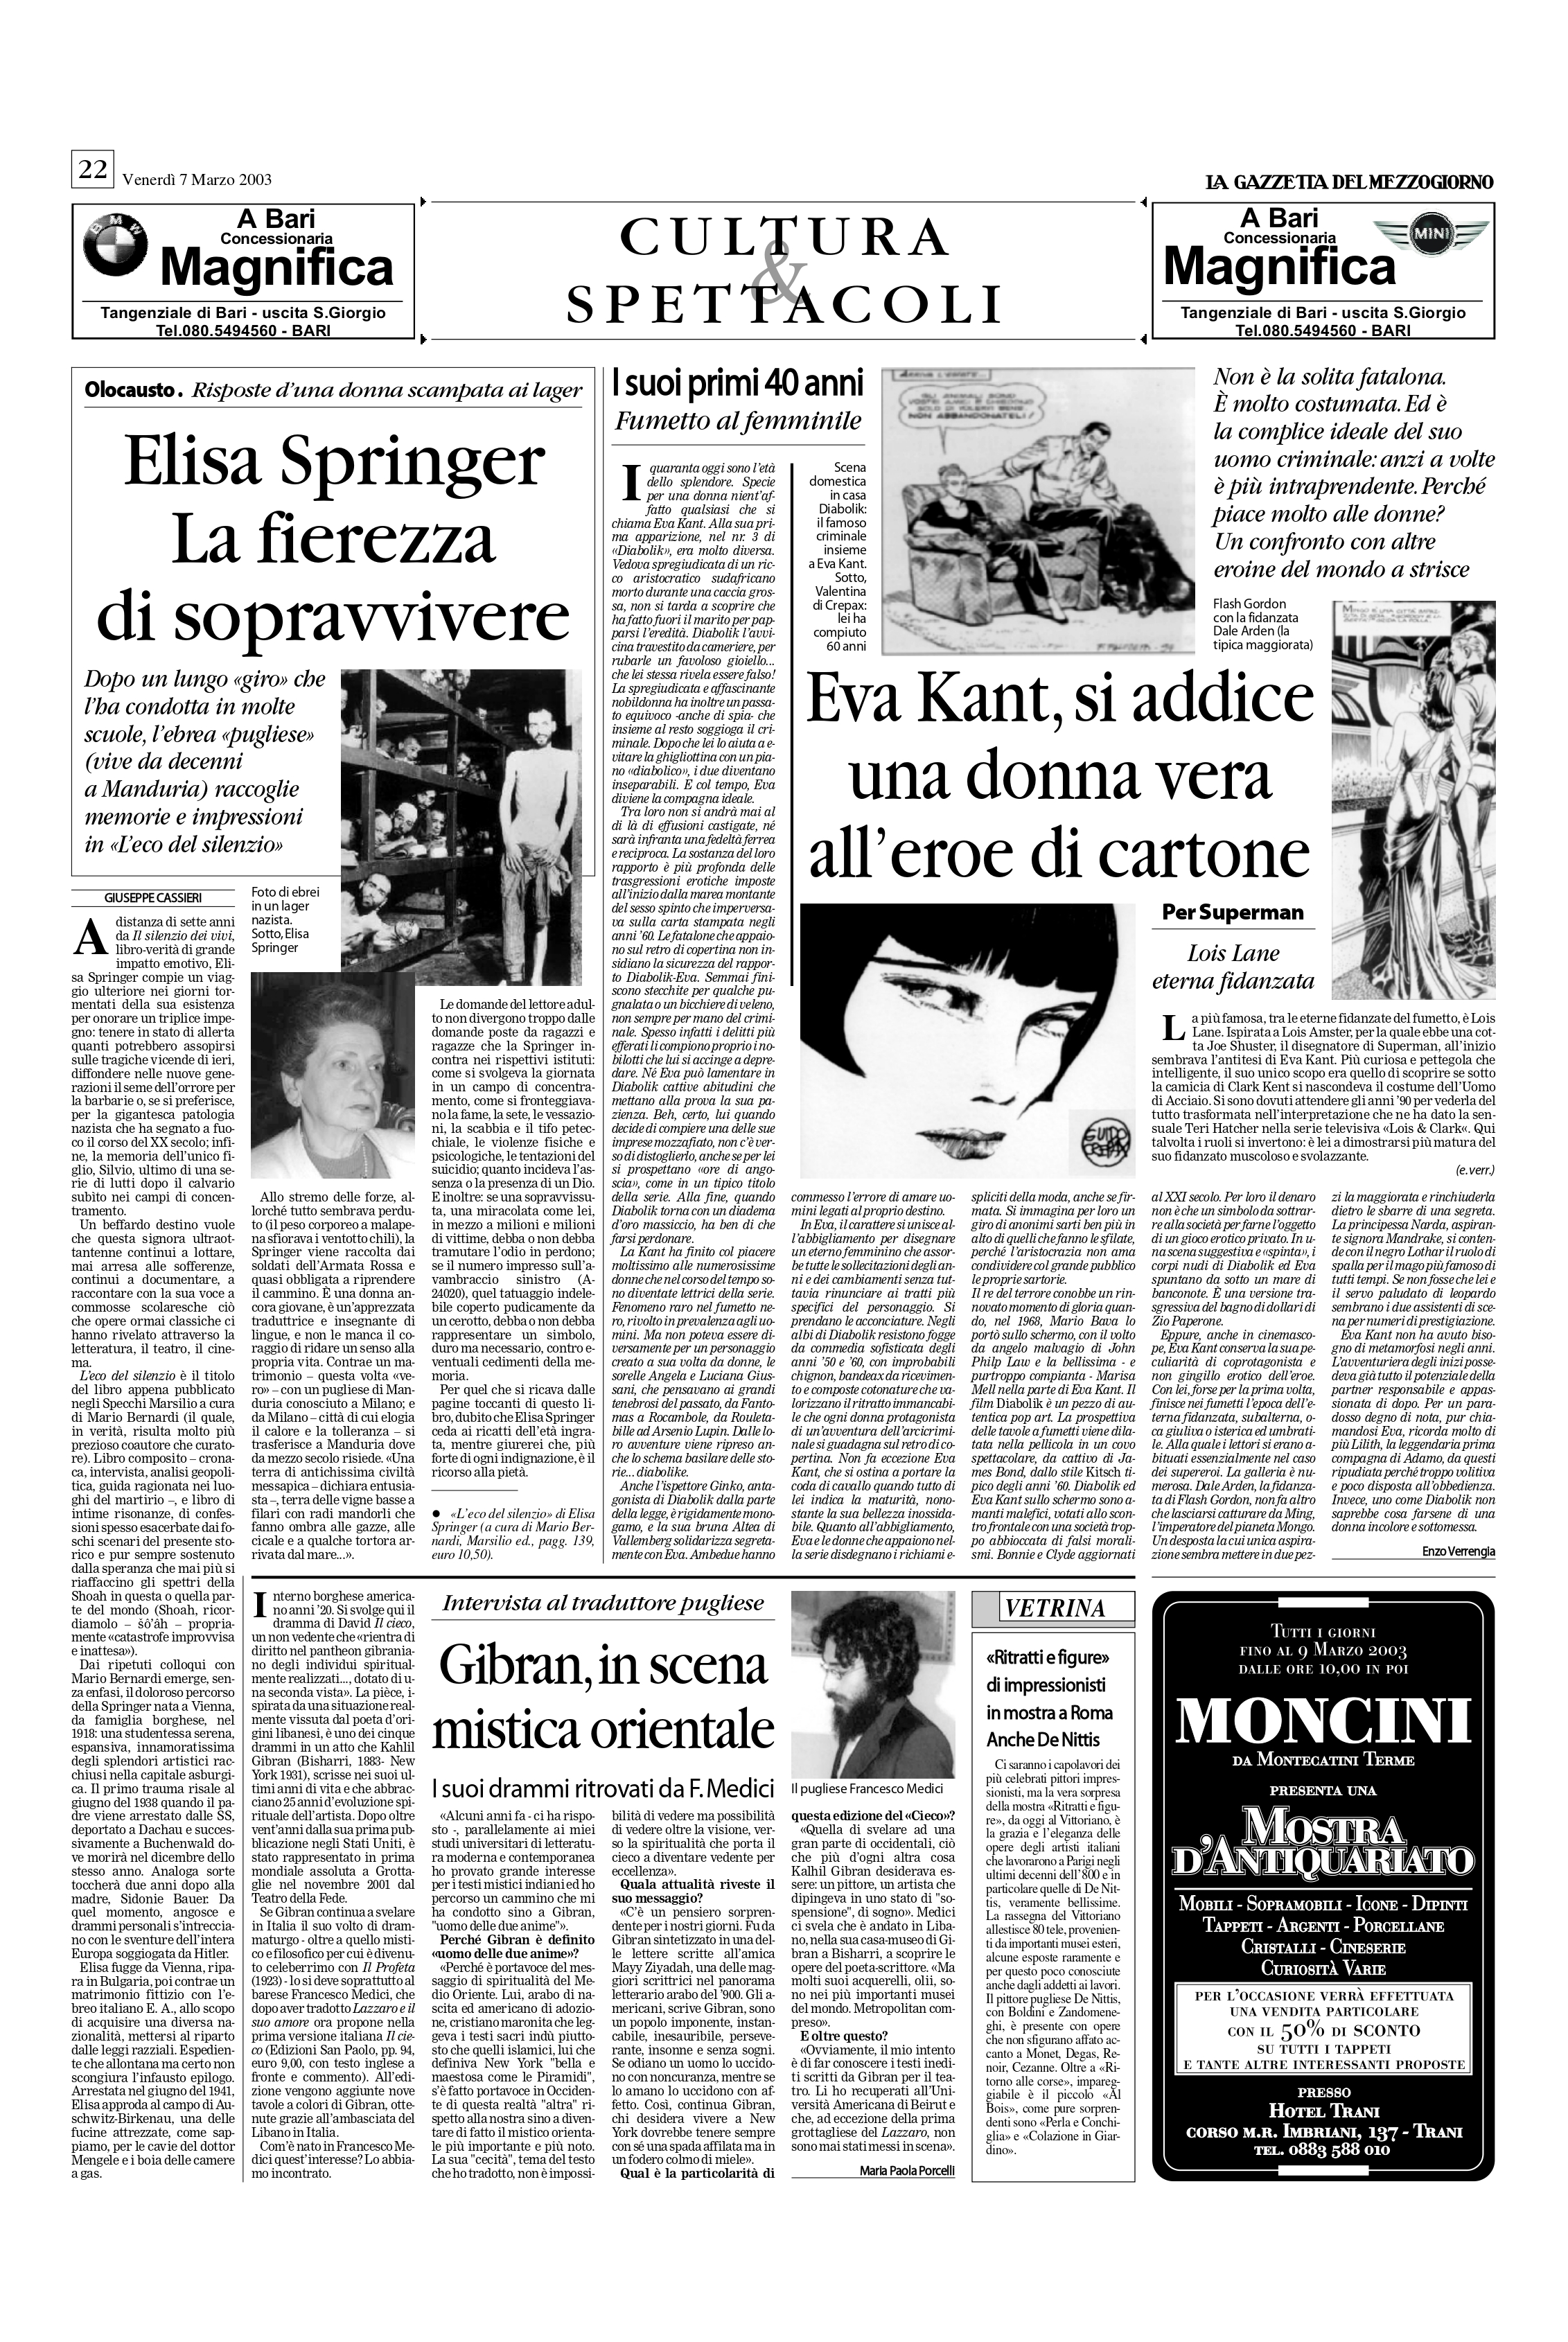 Maria Paola Porcelli, "Gibran,in scena mistica orientale", La Gazzetta del Mezzogiorno, Mar 7, 2003, p. 22 (interview)